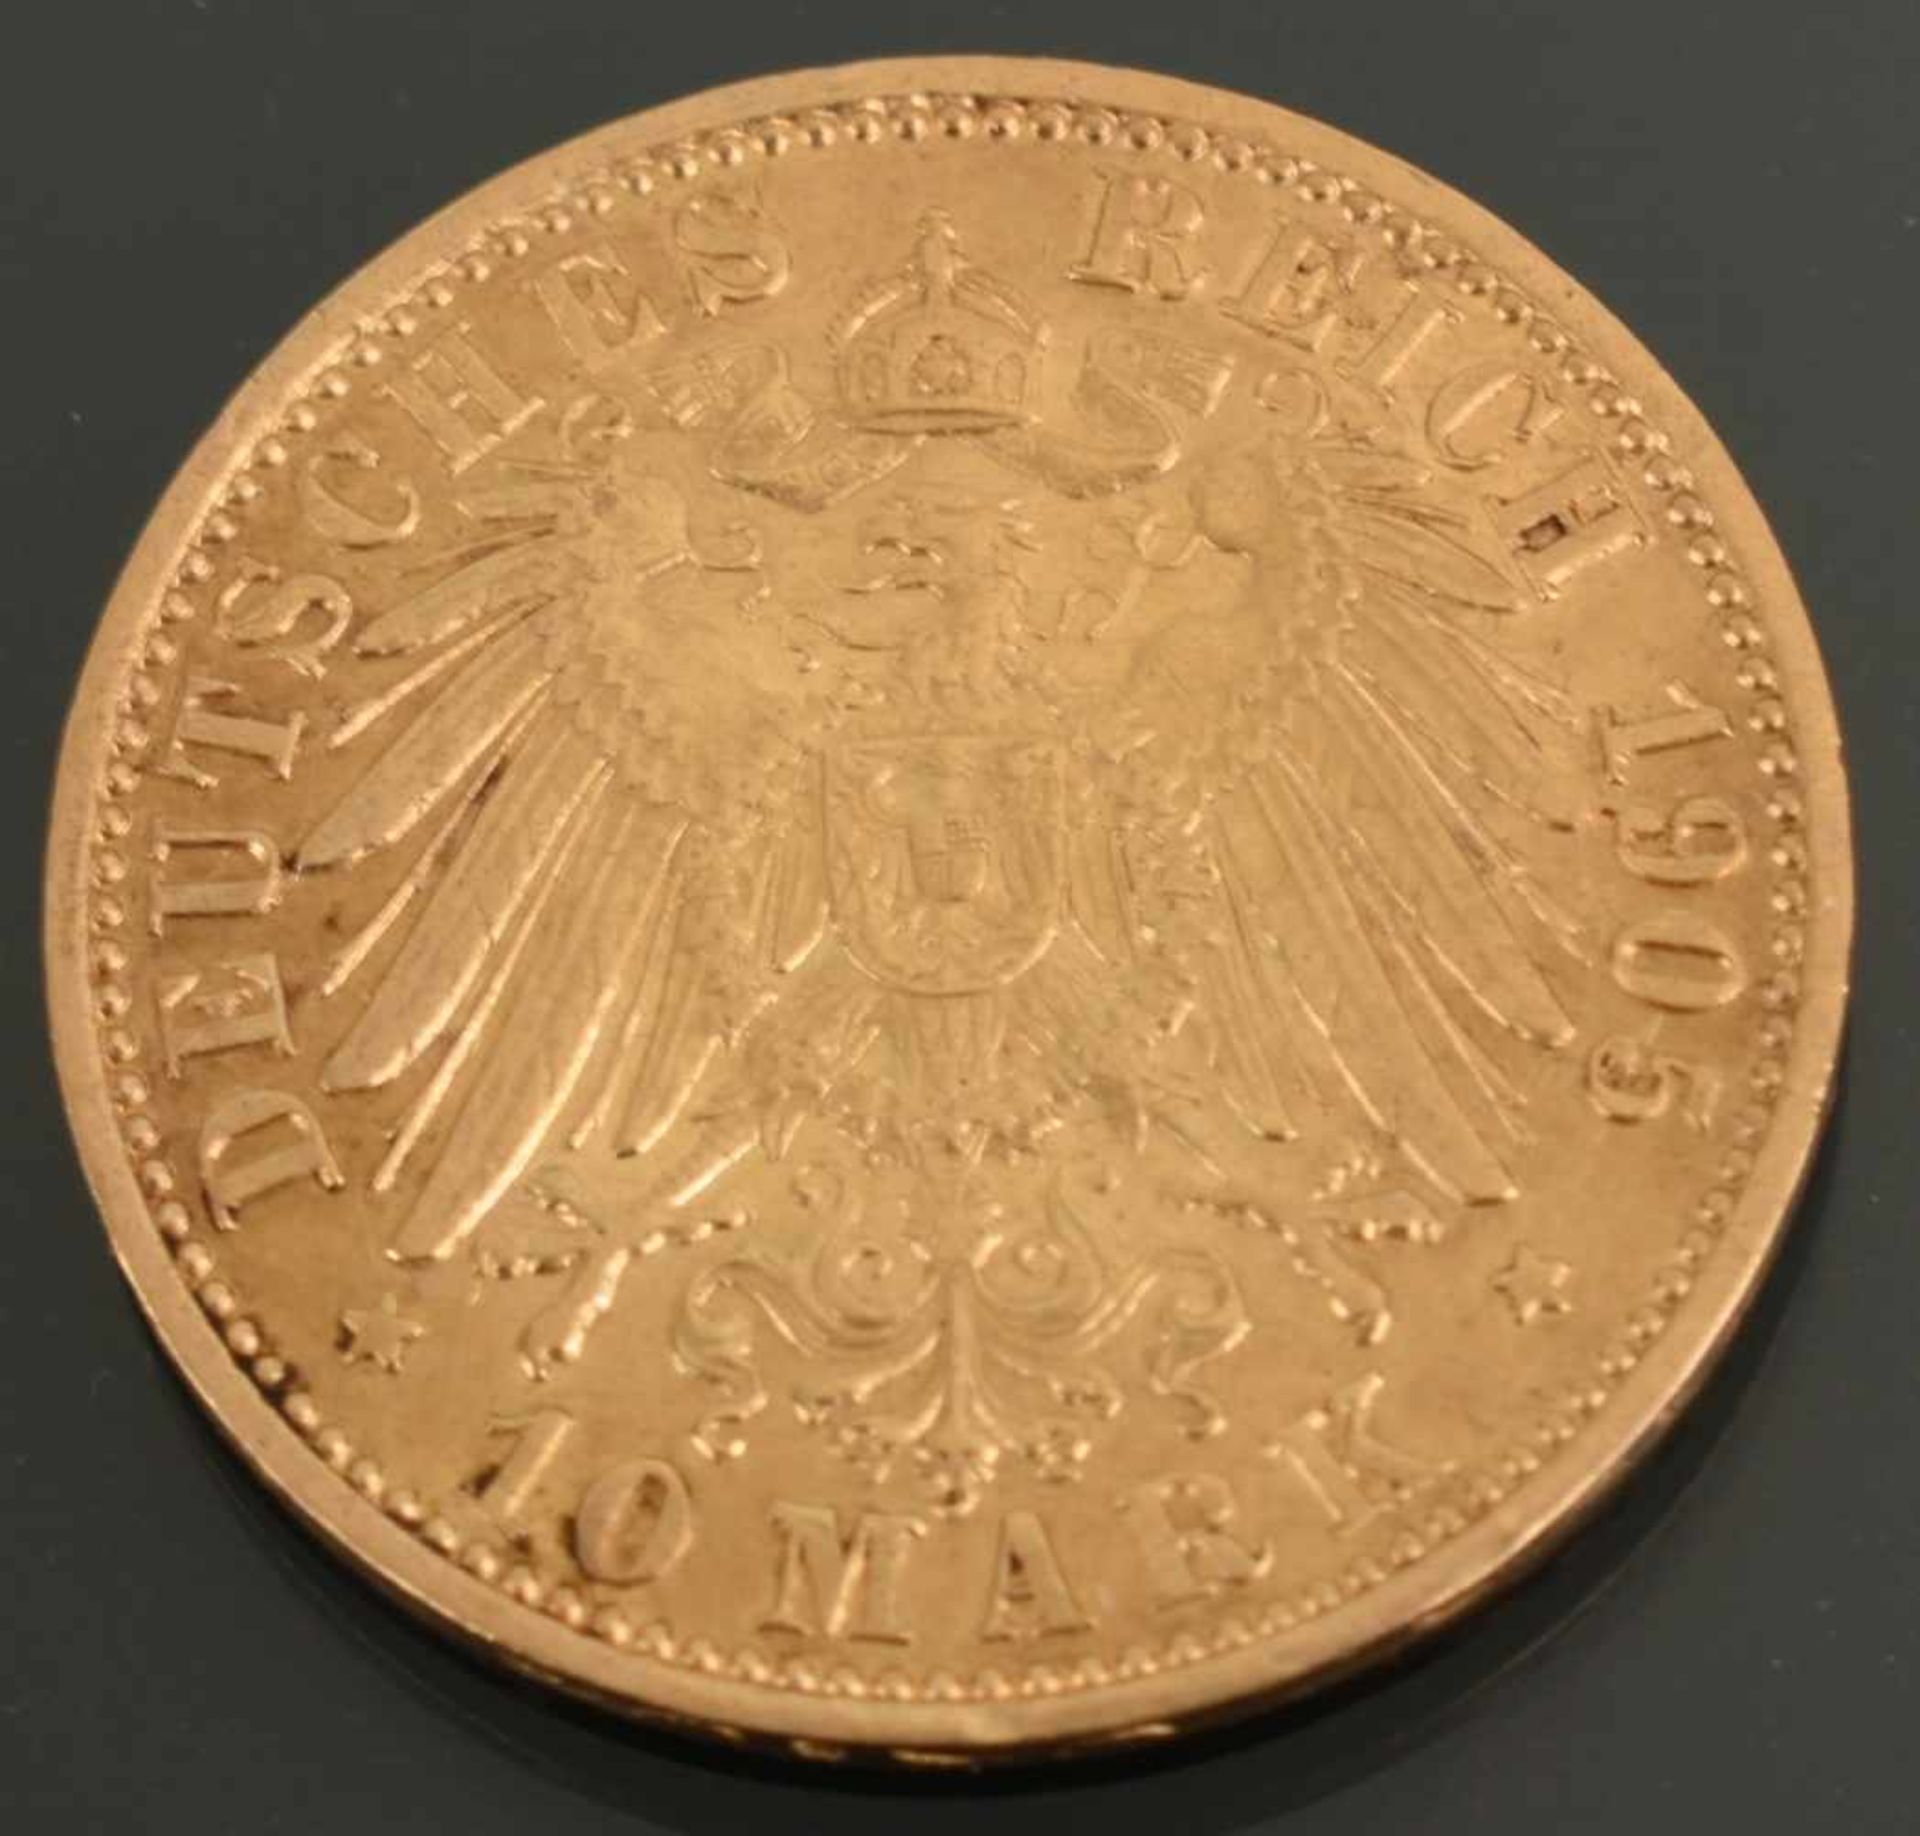 Goldmünze Kaiserreich - Preußen 1905 10 Mark in Gold, 900/1000, 3,98 g, D ca. 19,5 mm, av. Wilhelm - Image 3 of 3